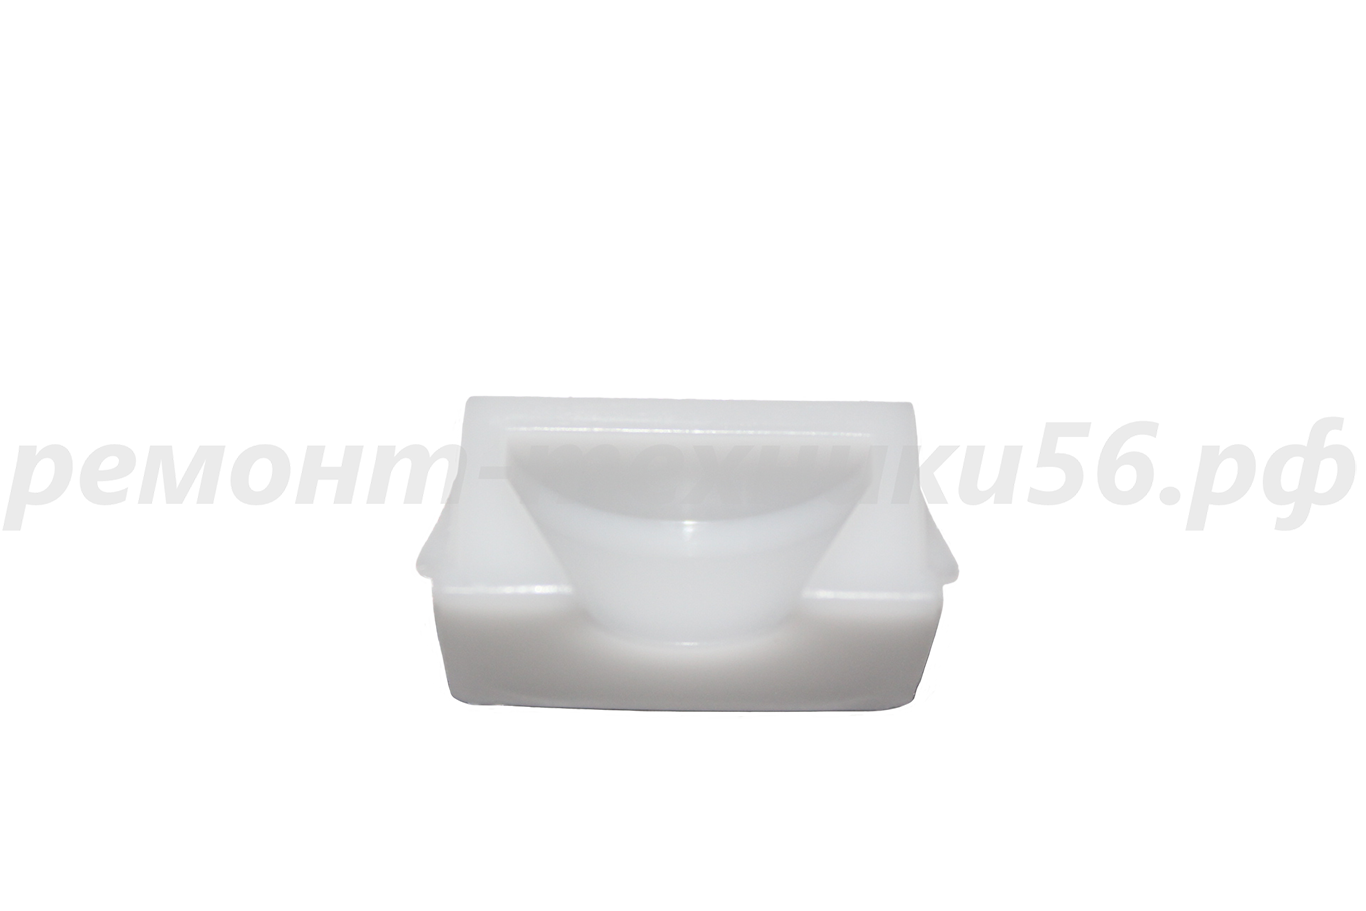 Подшипник скольжения передний Electrolux EHAW - 7515D white (сенсорное упр.) по выгодной цене фото3